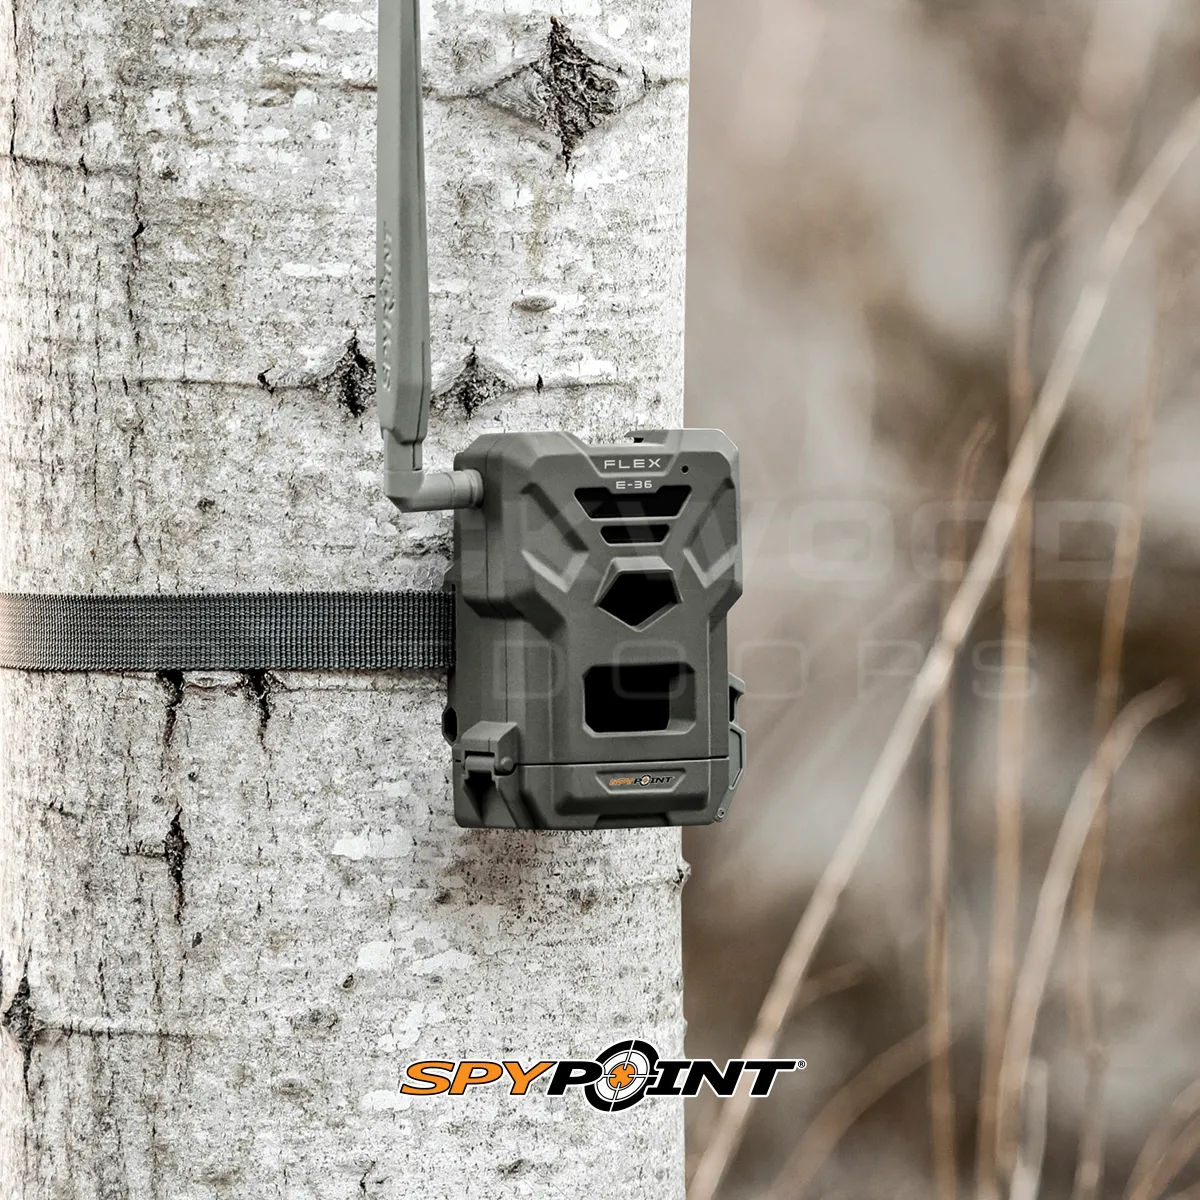 Spypoint Flex E-36 Trail Camera